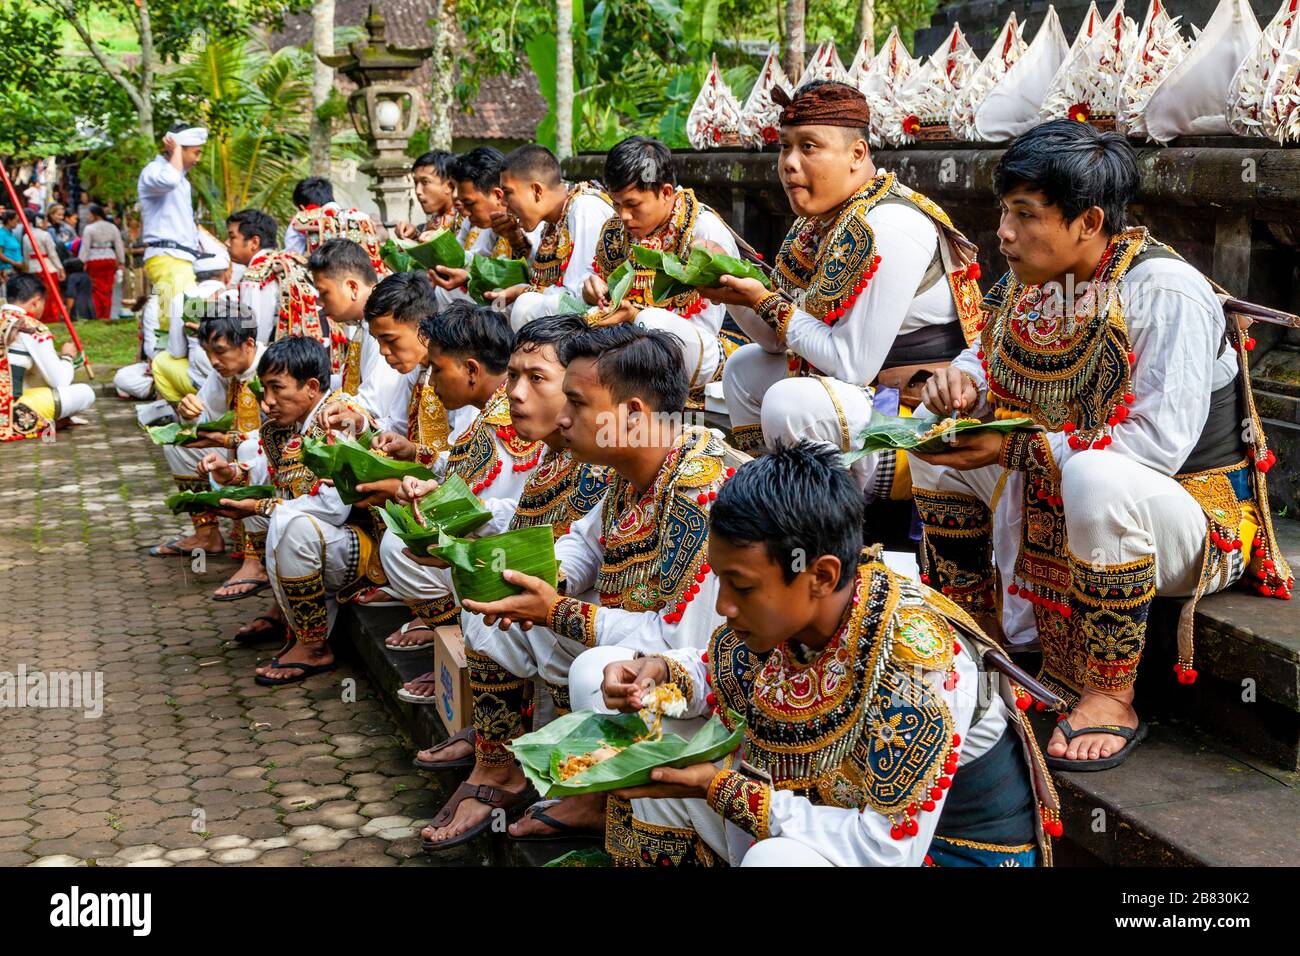 Eine Gruppe junger Männer im Kostüm, die Mittagessen auf EINEM Hindu-Festival, dem Wassertempel von Tyrta Emmul, Bali, Indonesien essen. Stockfoto